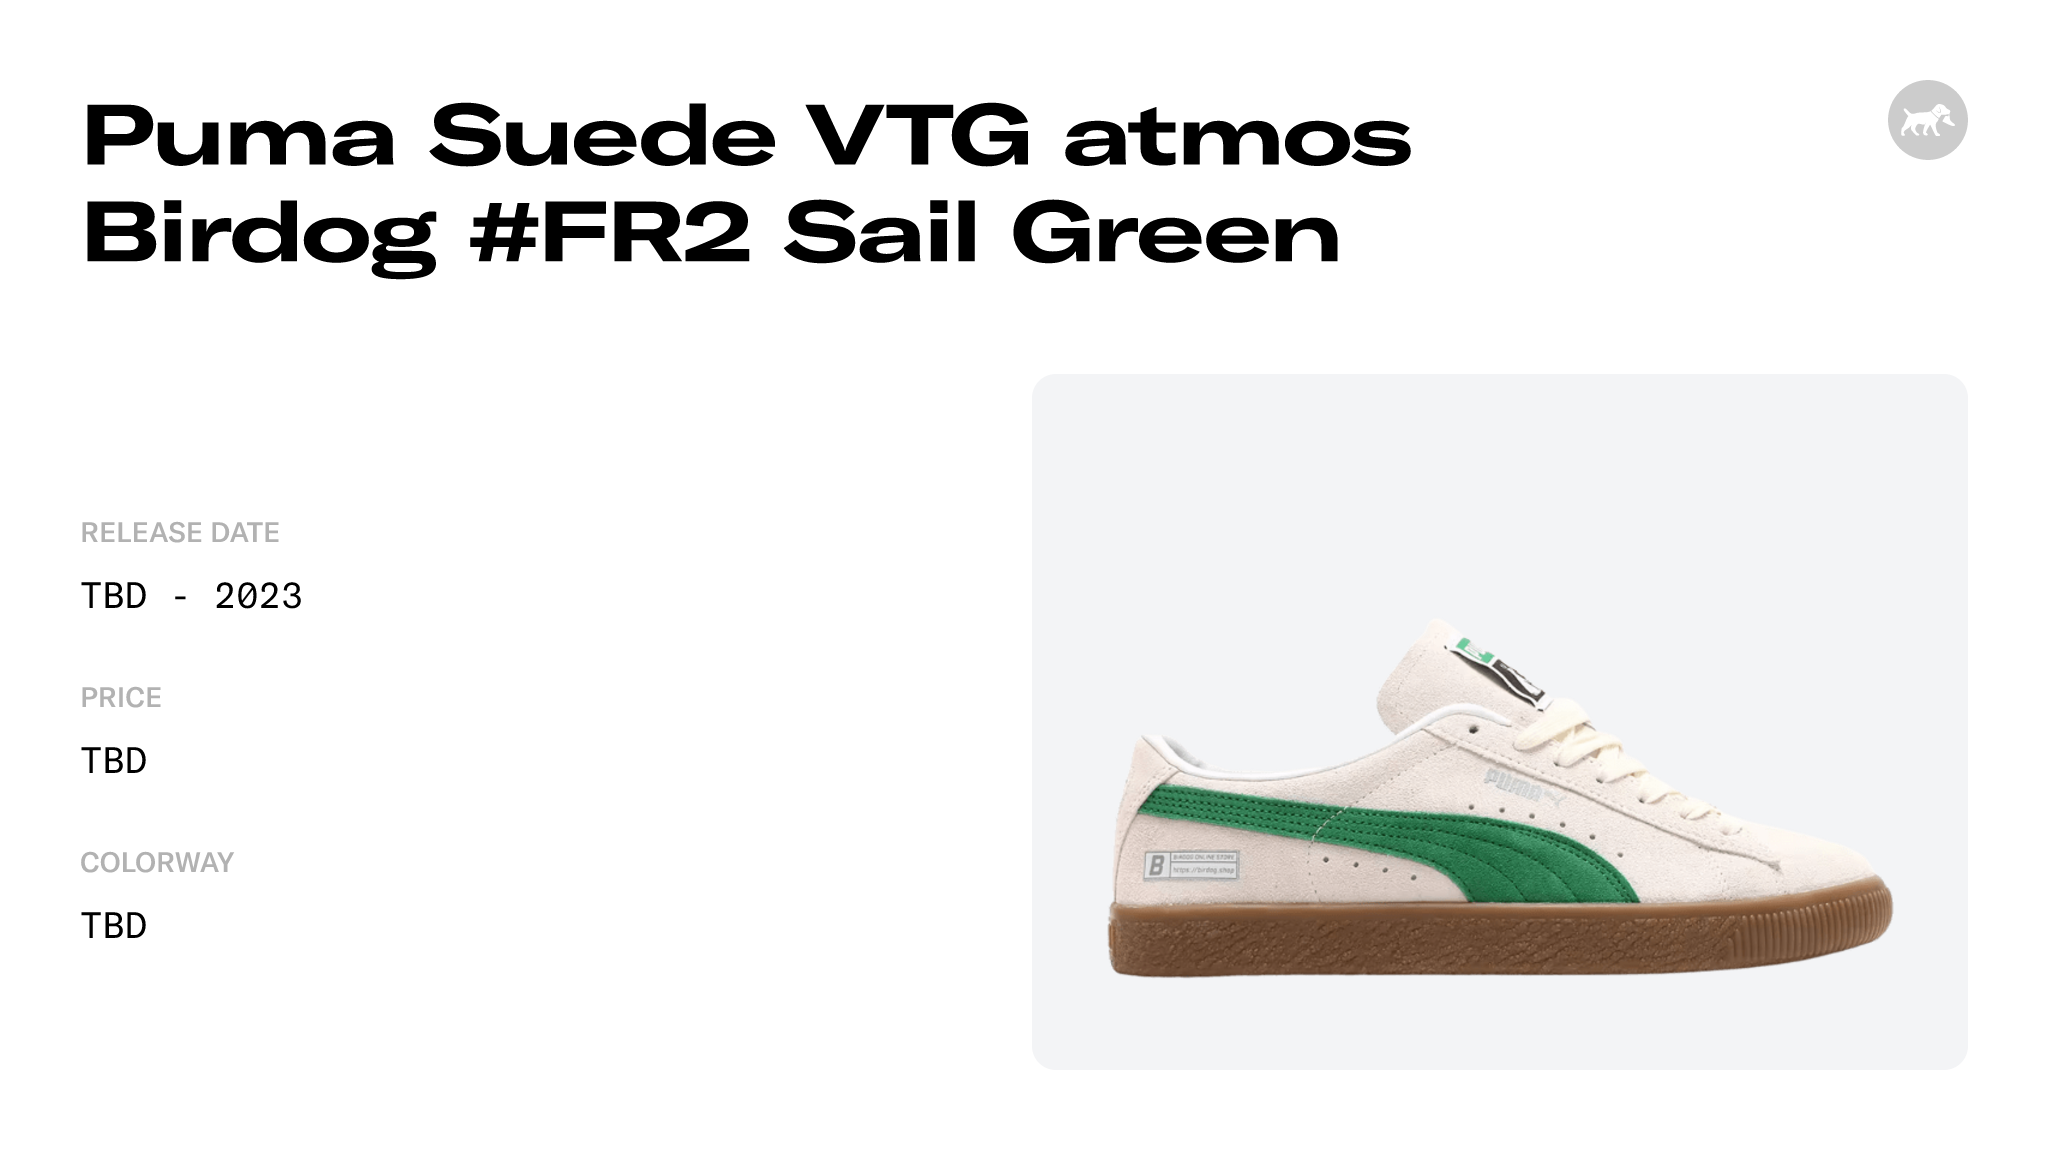 Puma Suede VTG atmos Birdog #FR2 Sail Green Raffles and Release 